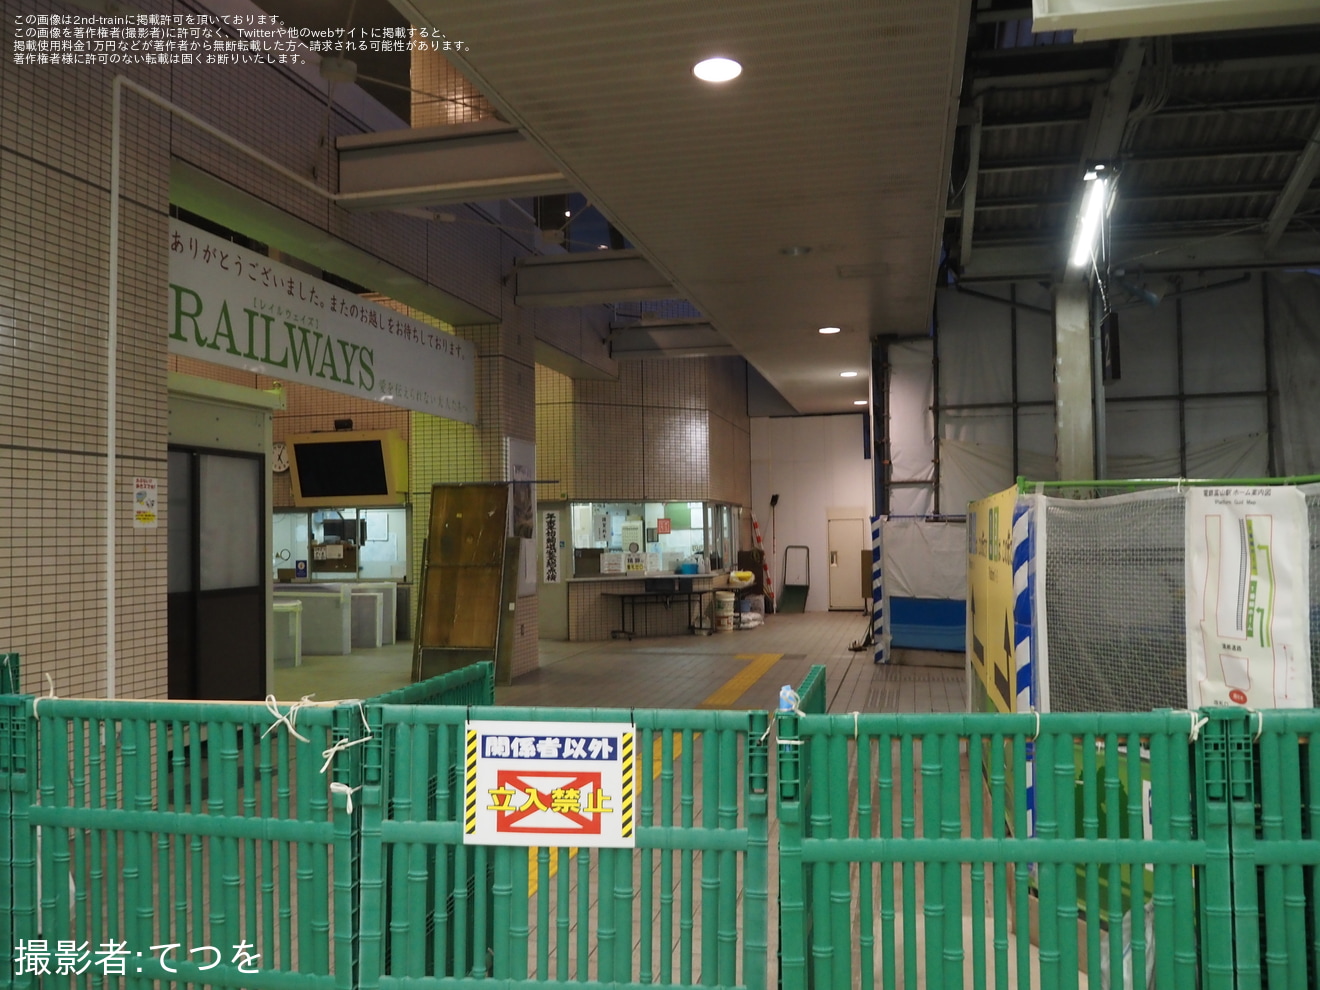 【地鉄】電鉄富山駅改札口、券売機及び駅事務室移転の拡大写真